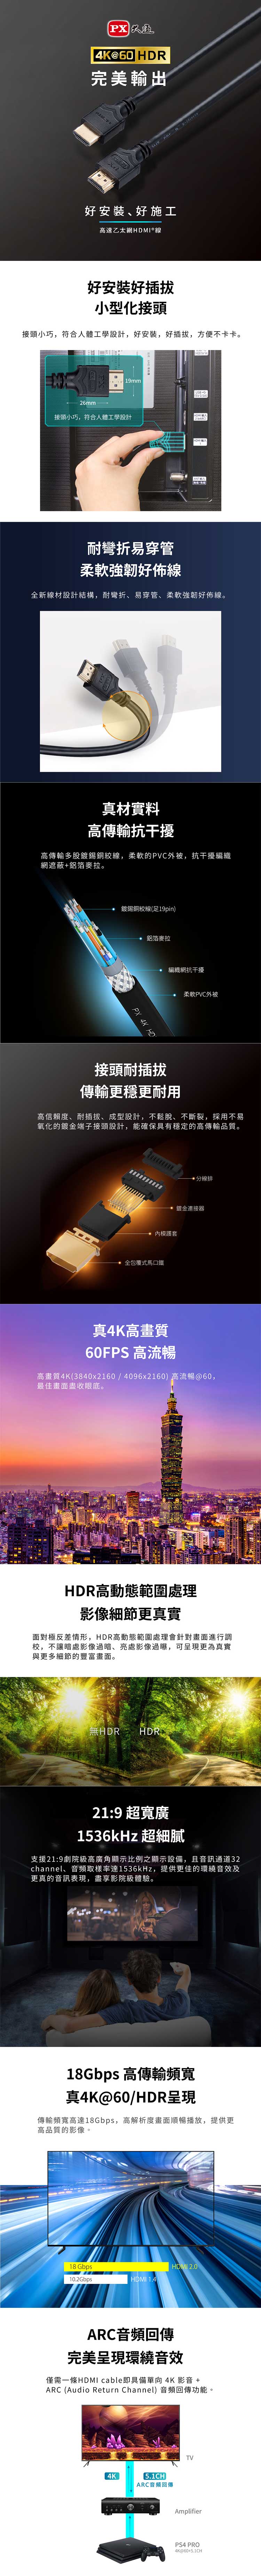 PX-大通-HDMI-3ME-內.jpg